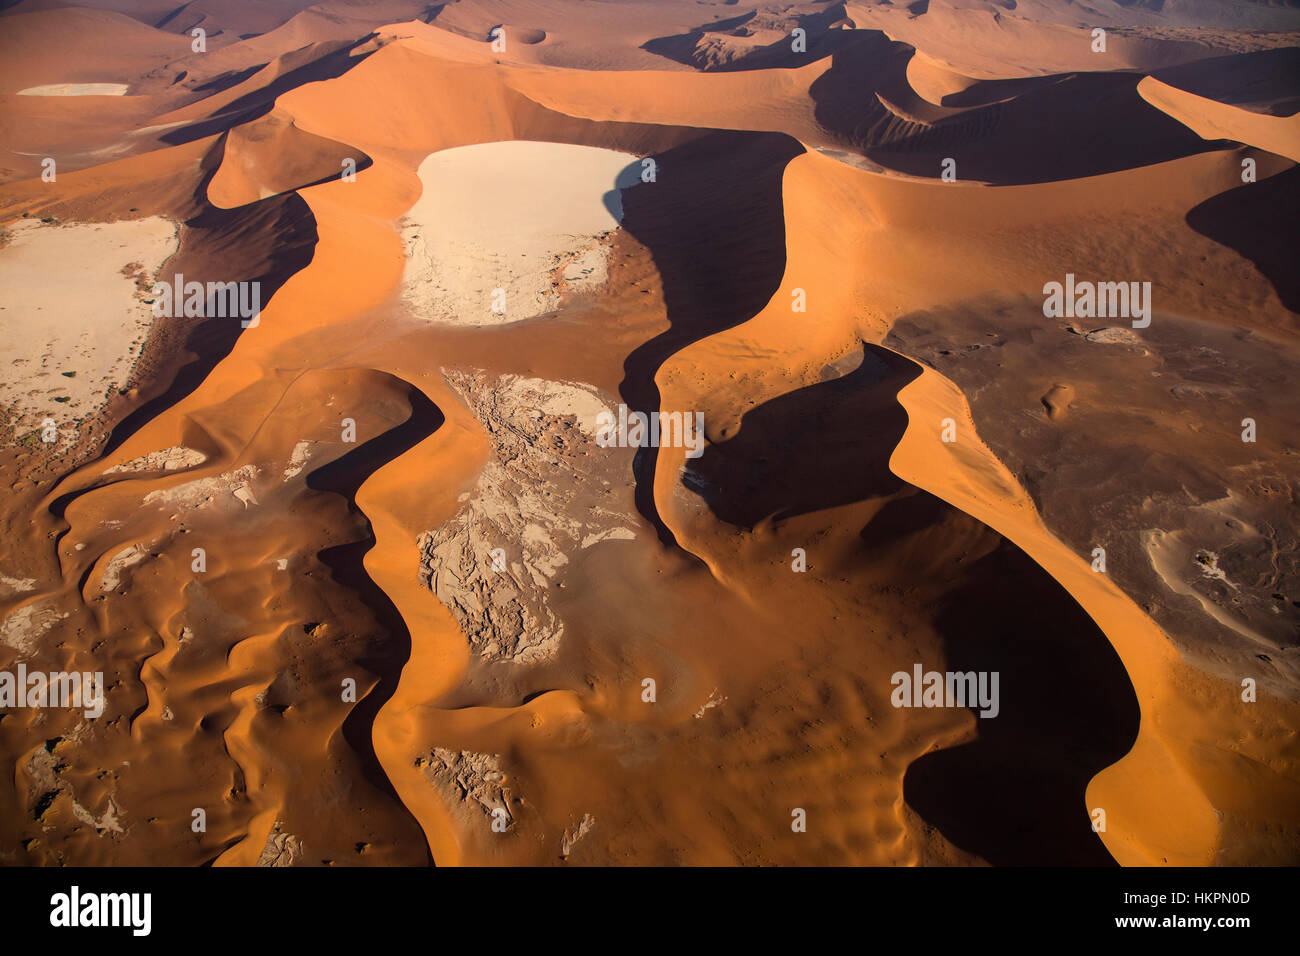 Le dune di sabbia, argilla bianca pan, salina, Deadvlei, Sossusvlei, Namib Desert, Namib-Naukluft Pk, Namibia, da Monika Hrdinova/Dembinsky Foto Assoc Foto Stock